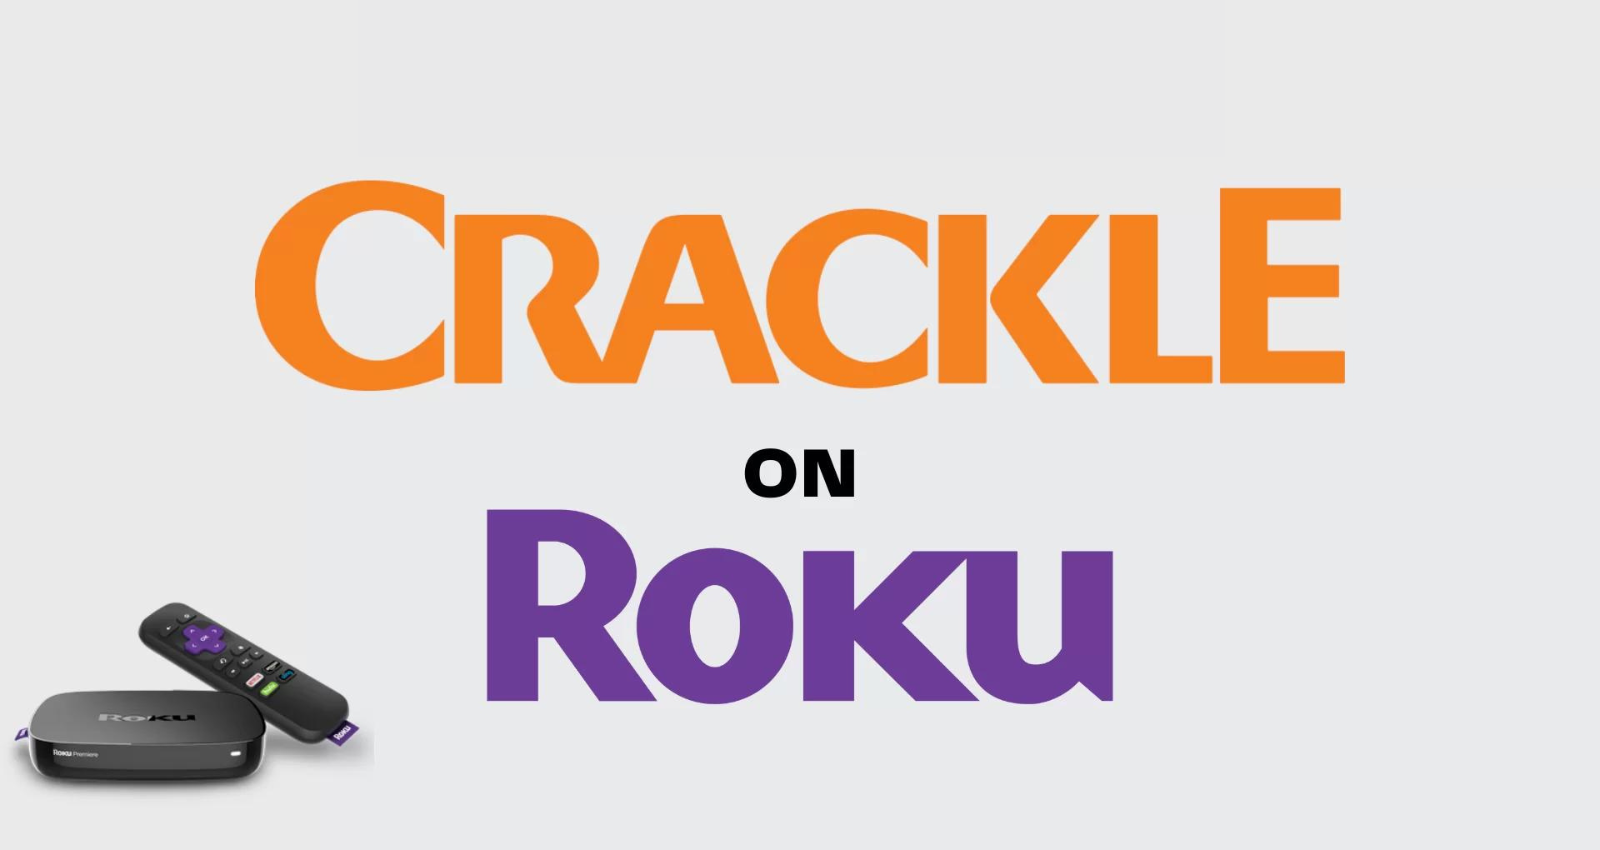 Crackle on Roku